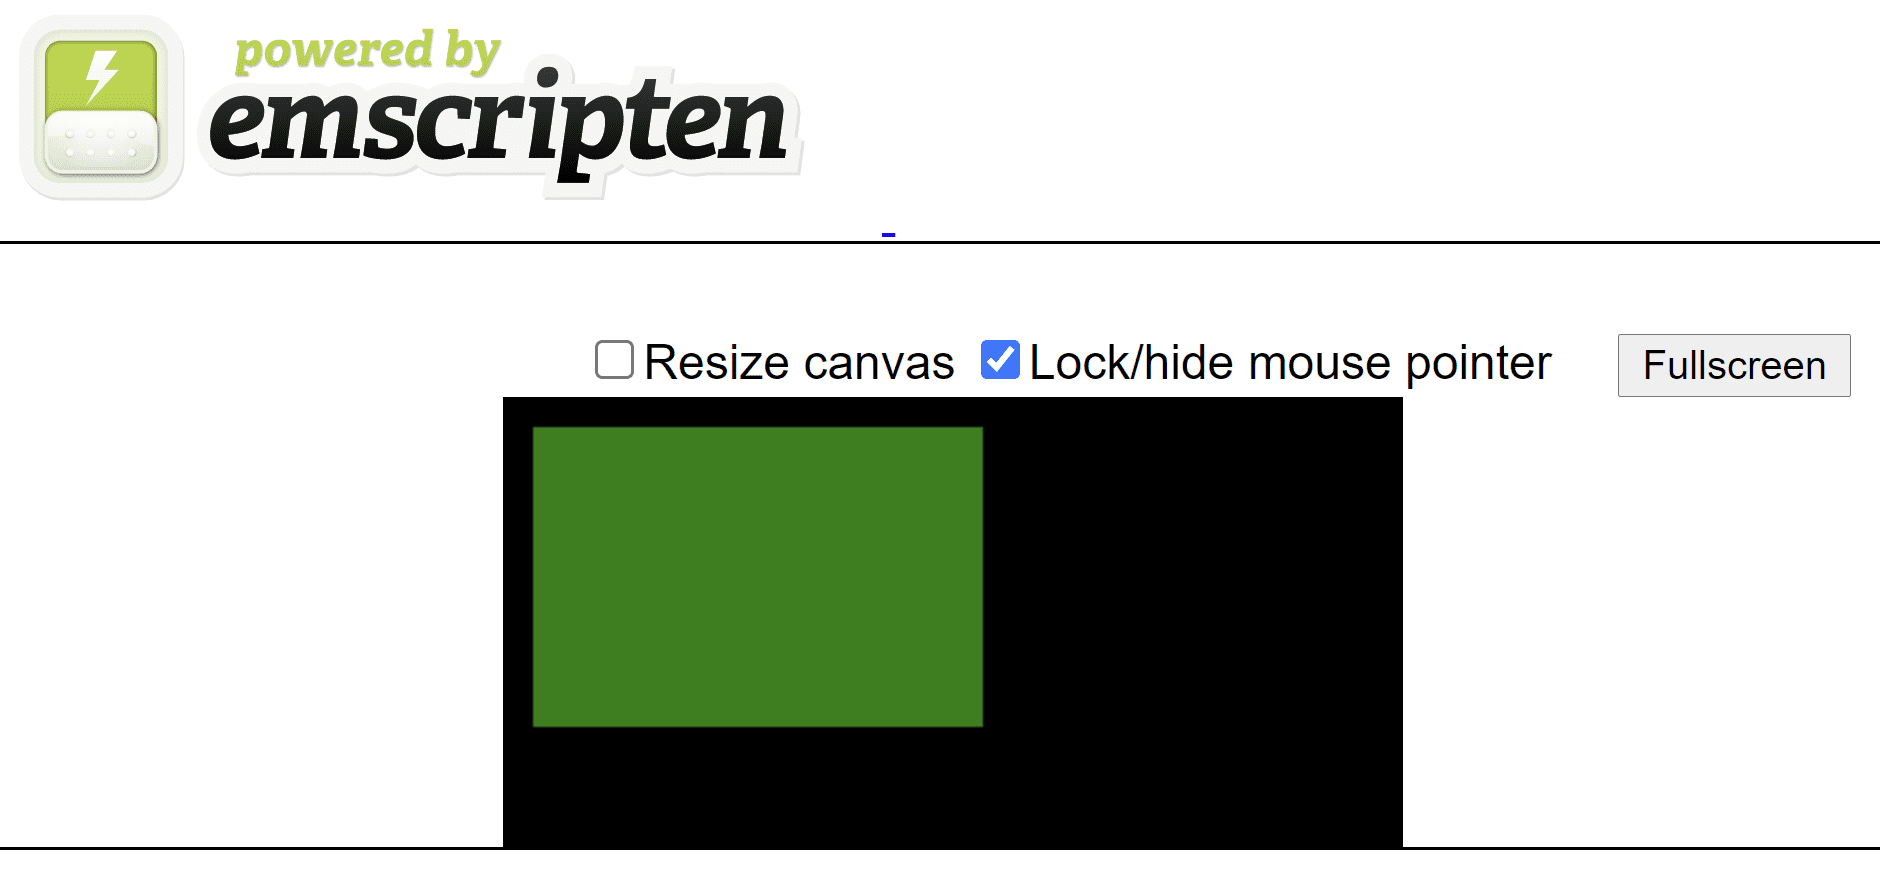 صفحه HTML ایجاد شده توسط Emscripten که یک مستطیل سبز را روی بوم سیاه نشان می دهد.